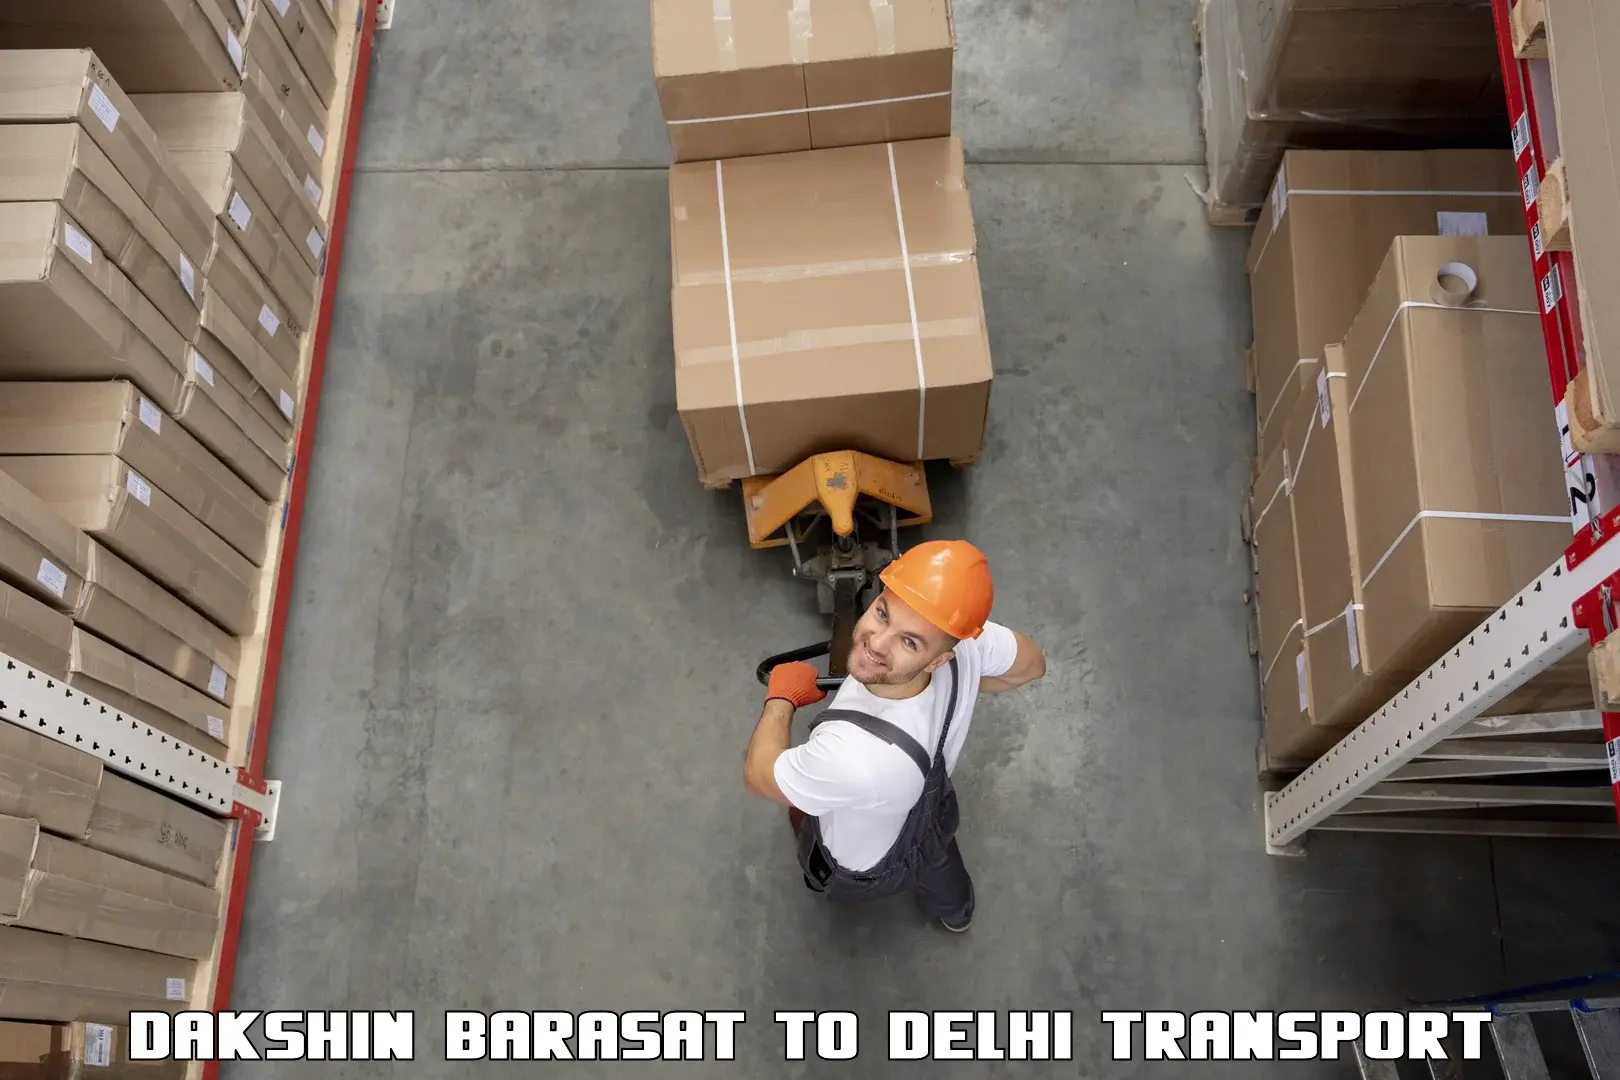 Cargo transportation services Dakshin Barasat to Delhi